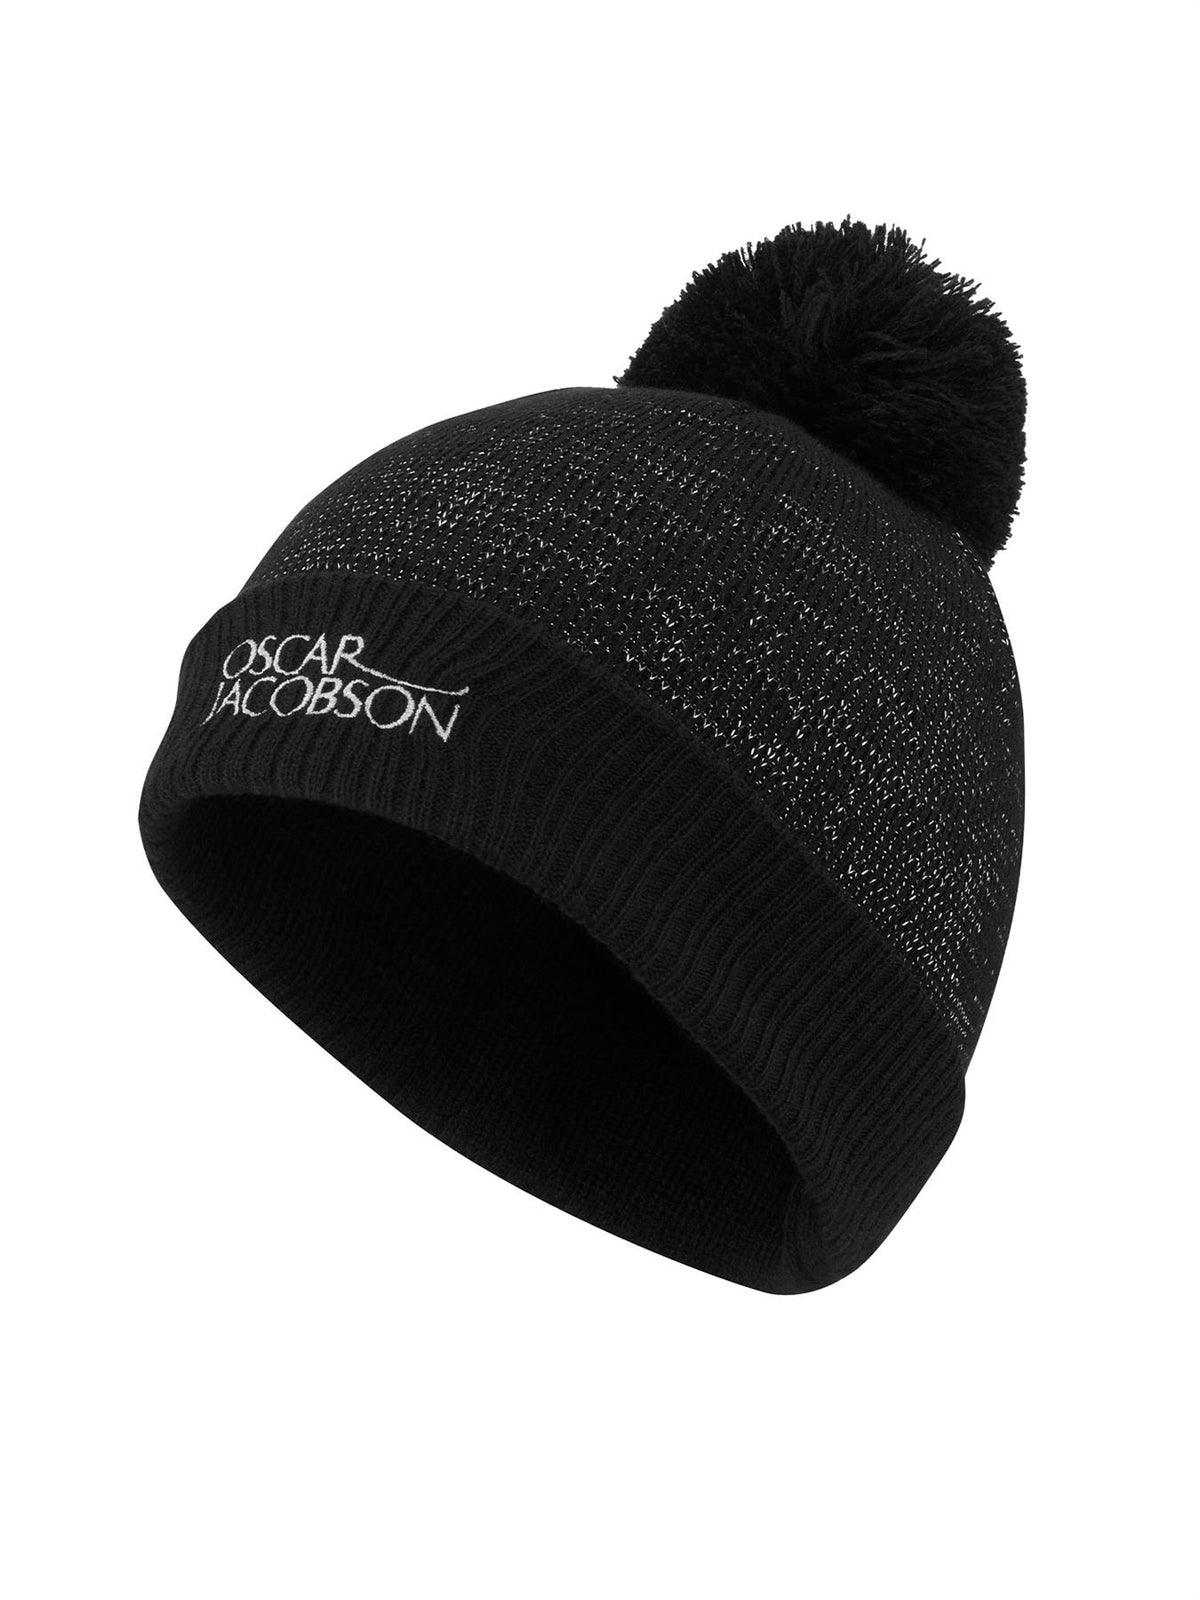 Avalon Bobble Hat